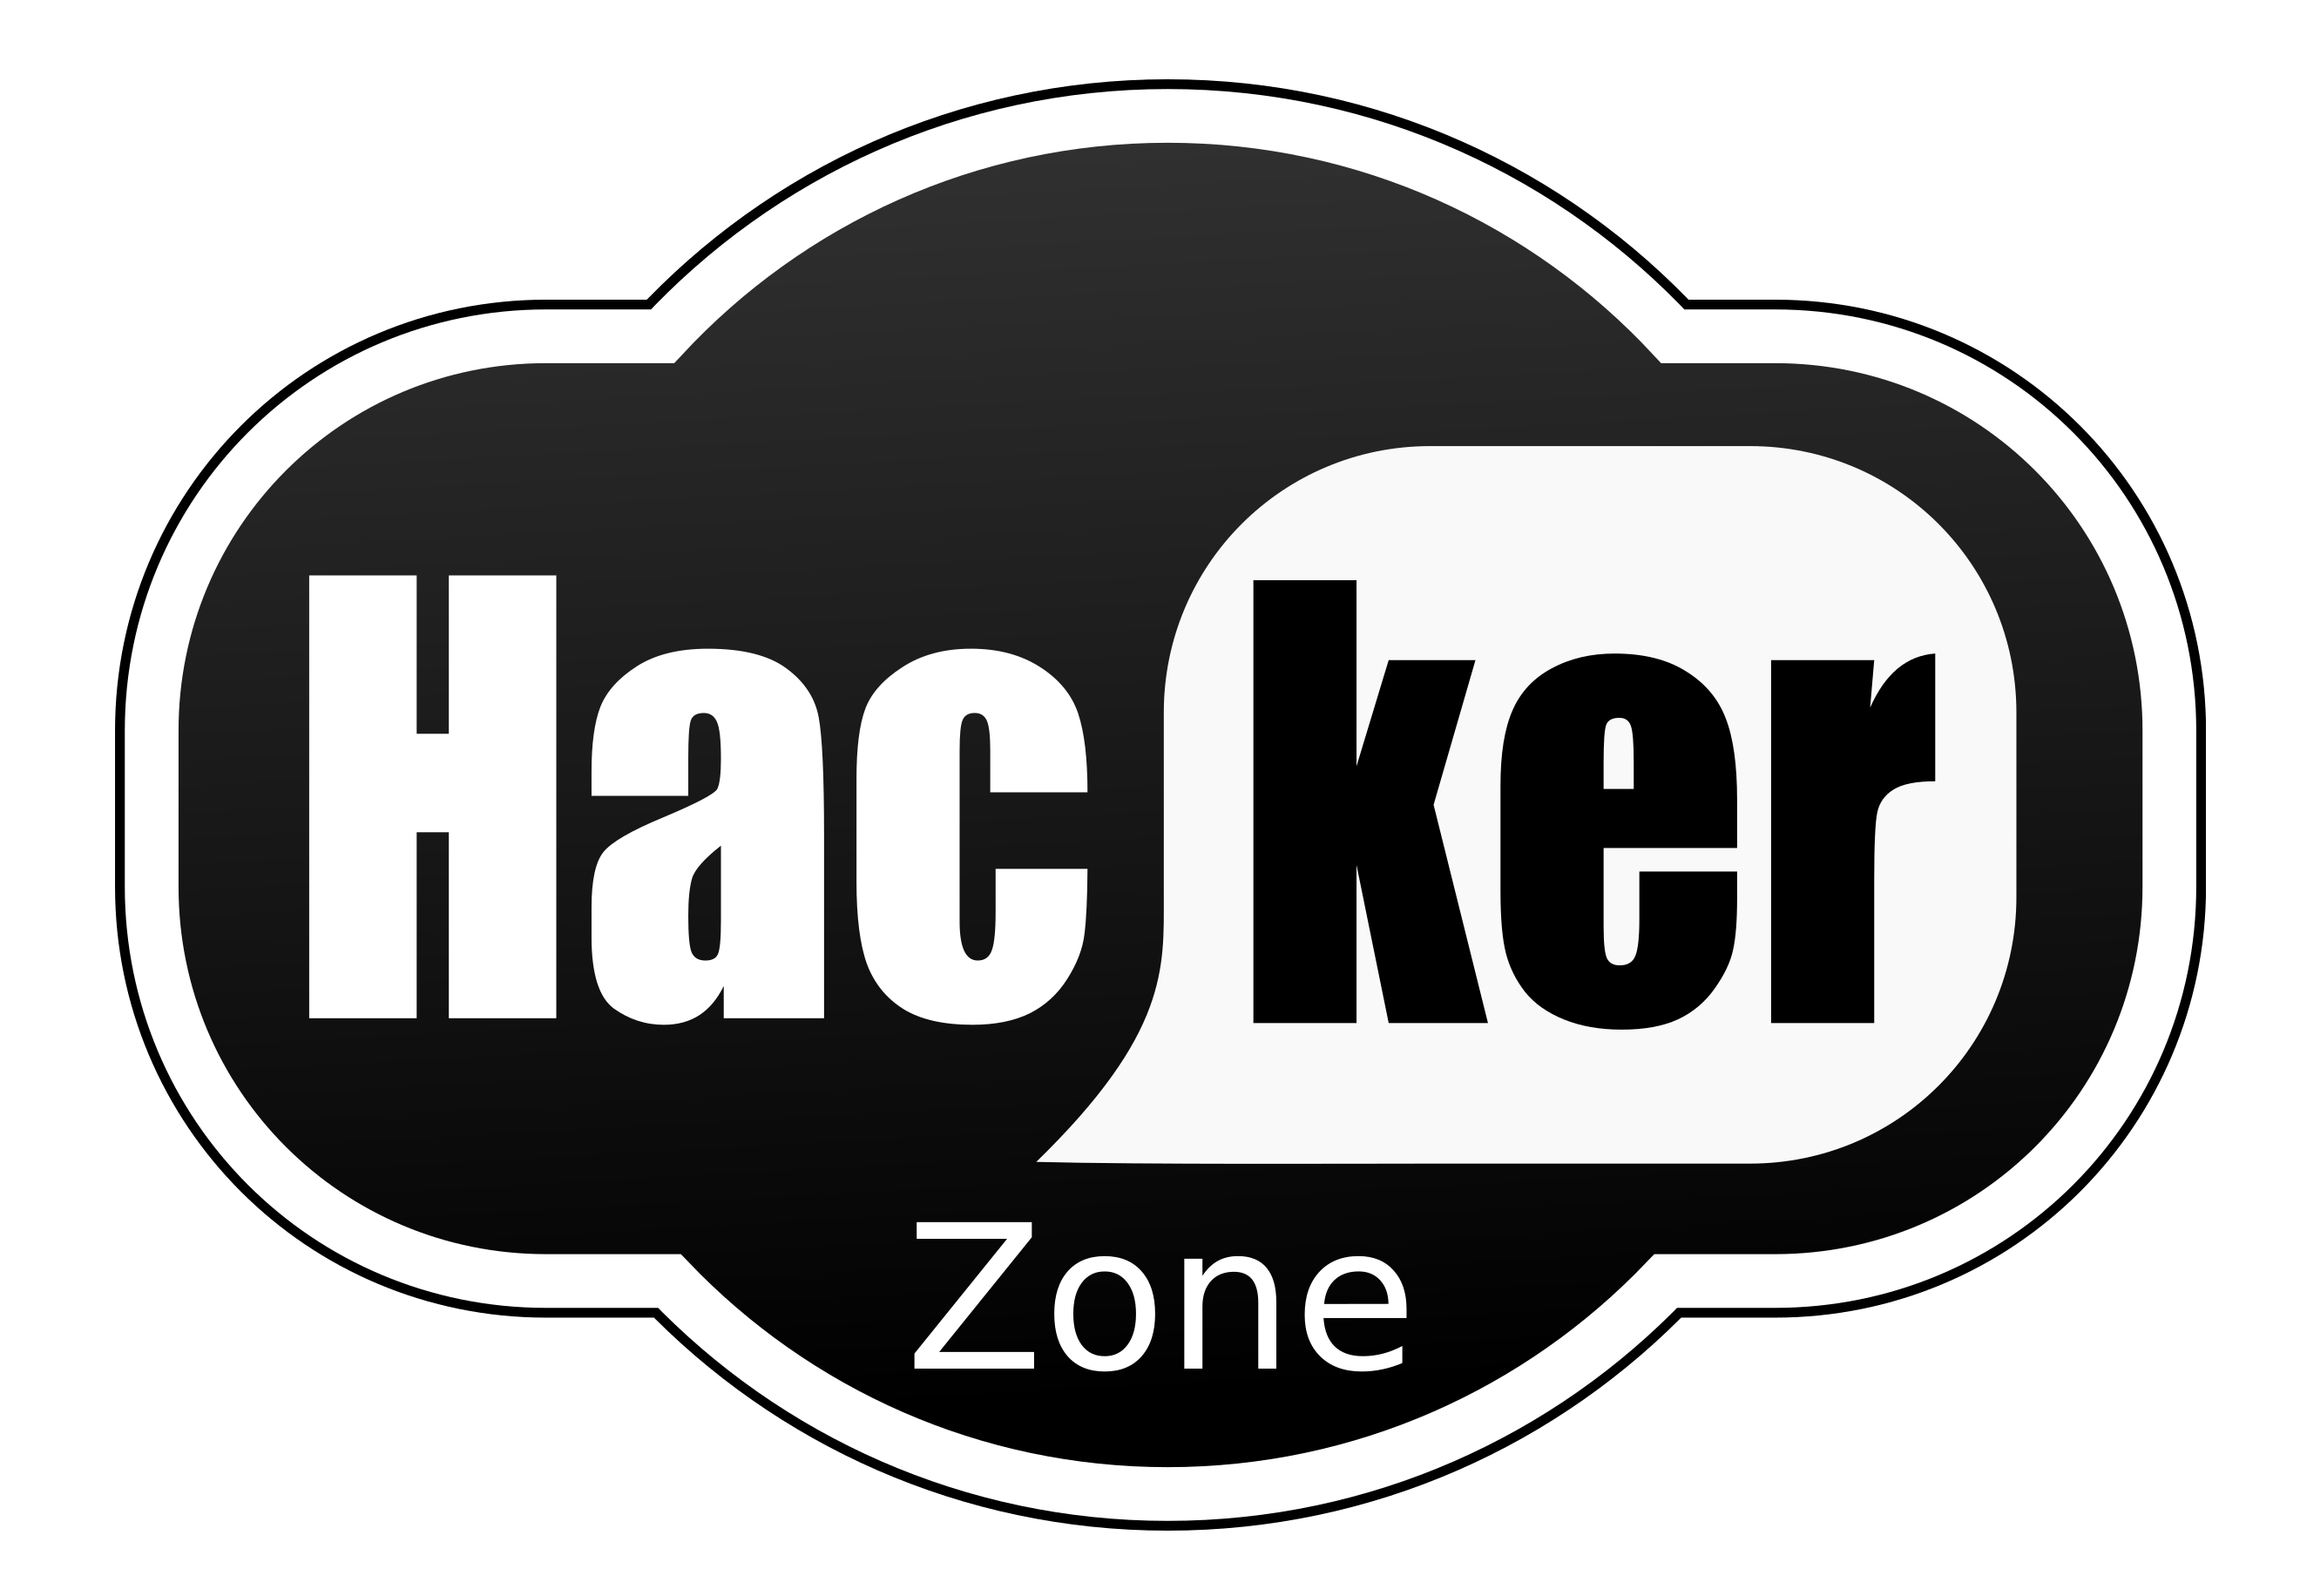 Hacker PNG HD pngteam.com